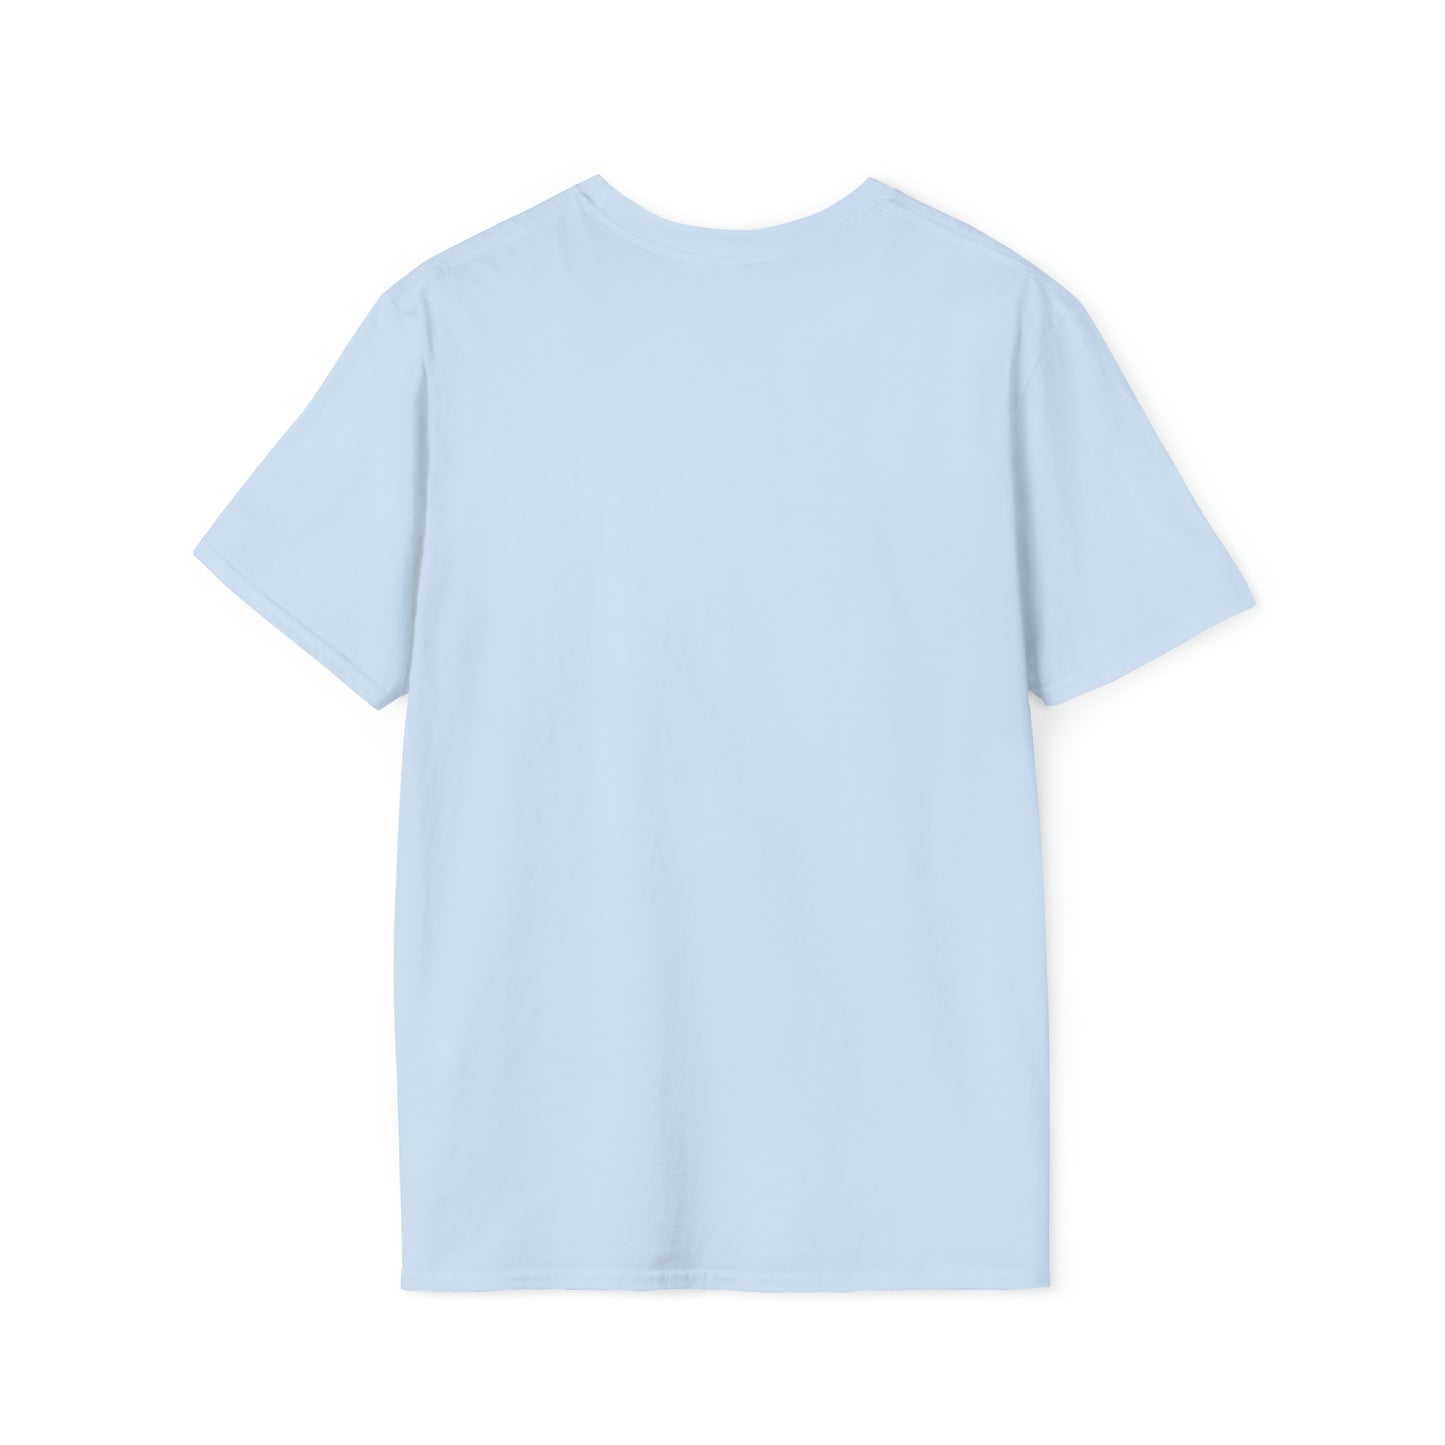 #Slurpee - Unisex Softstyle T-Shirt